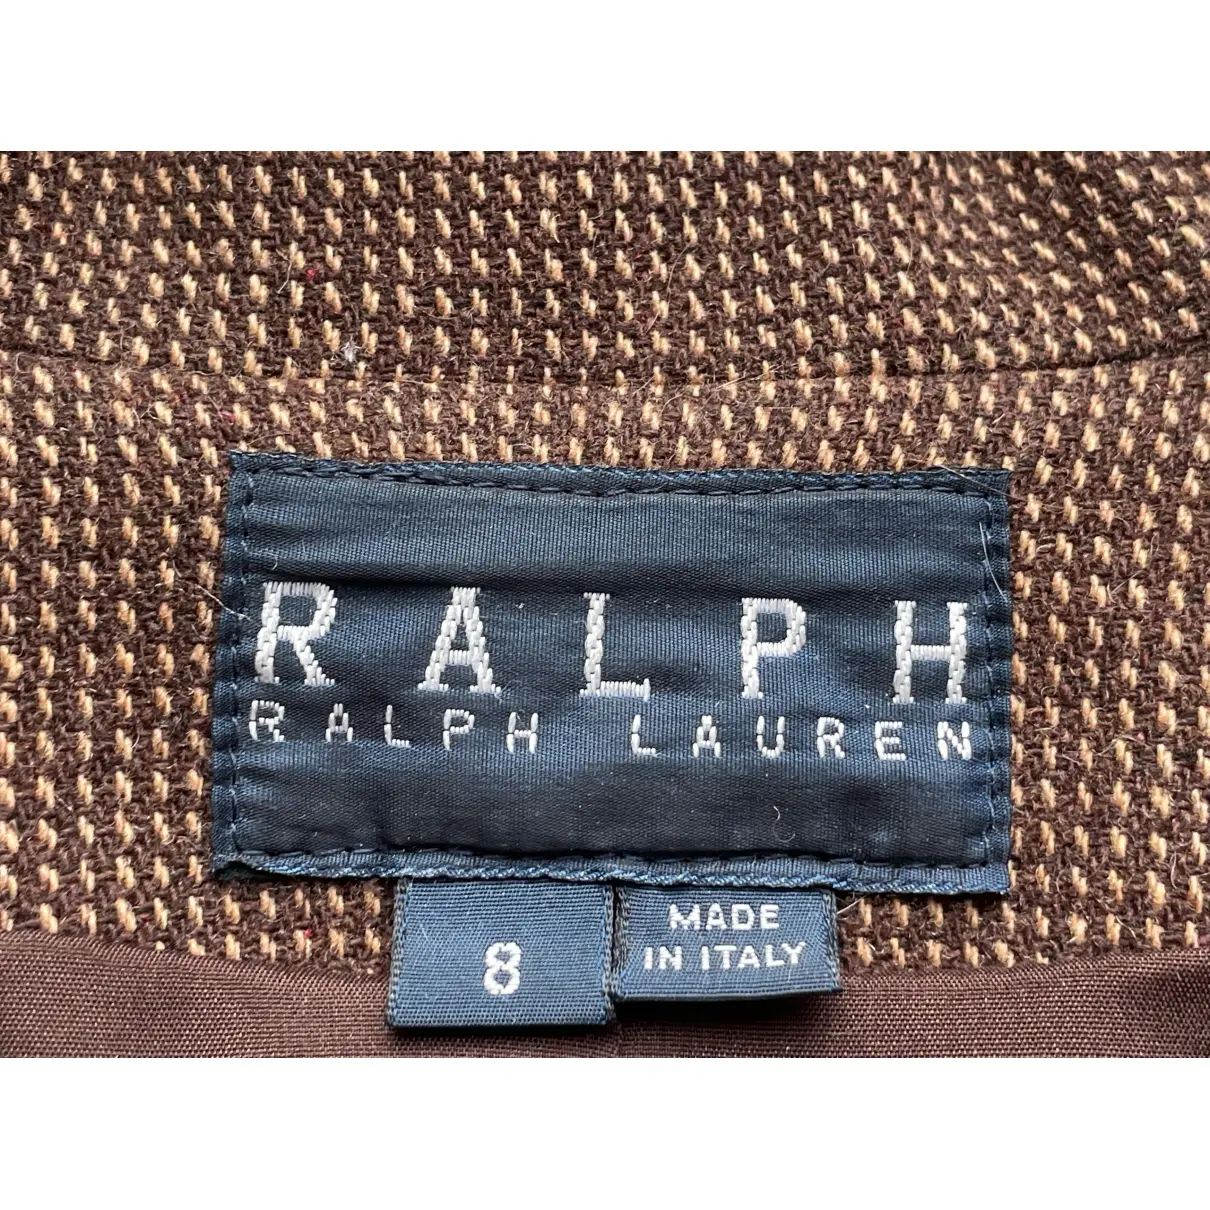 Luxury Ralph Lauren Jackets Women